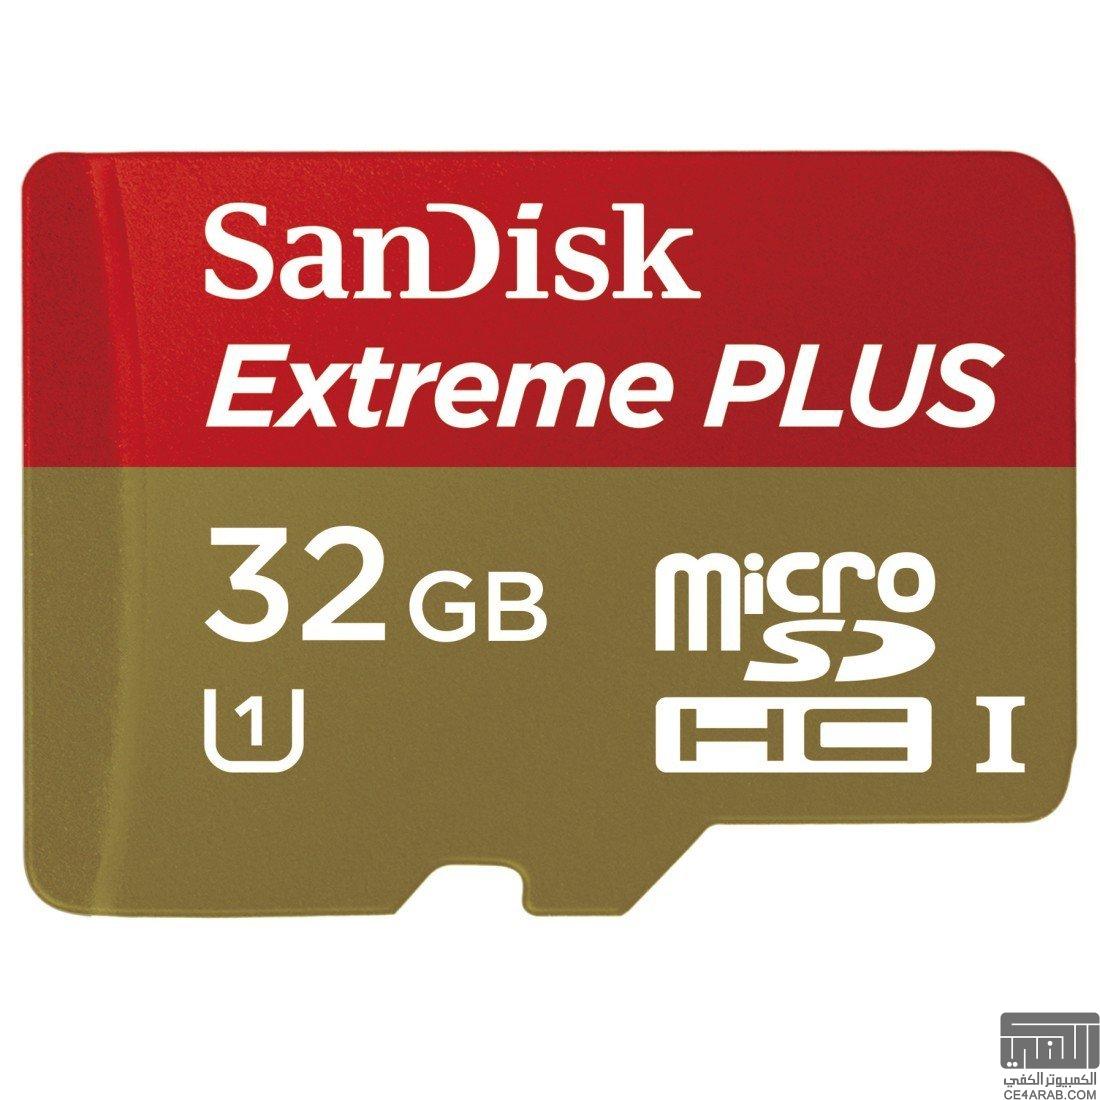 ذاكرة مايكرو (SanDisk Extreme Plus) بحجم 32G *سعر أكثر من رائع*